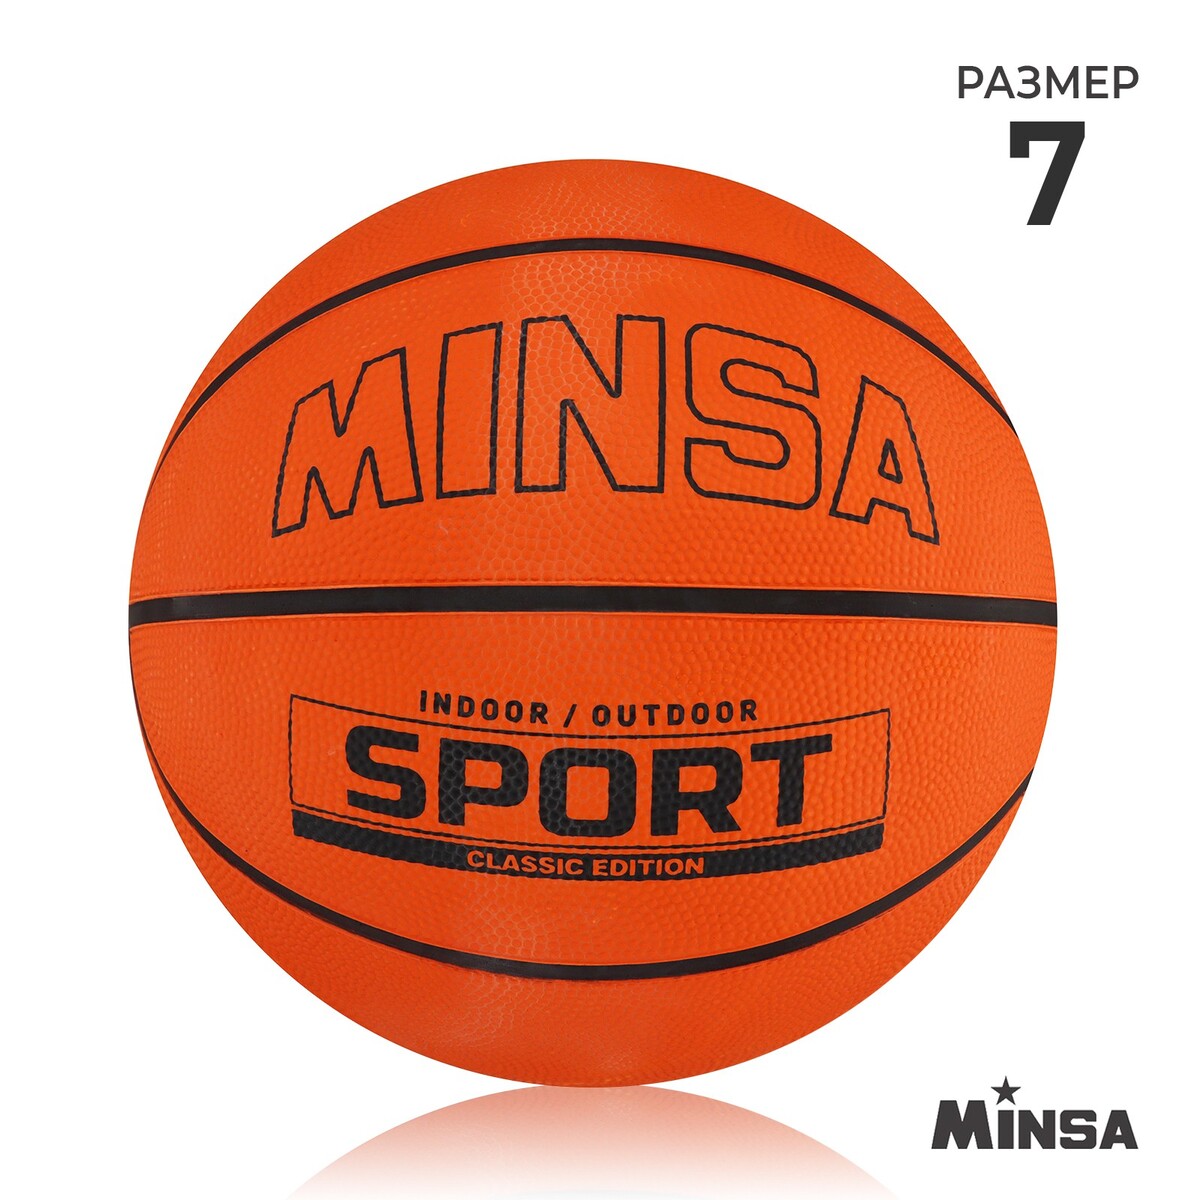 Мяч баскетбольный minsa sport, пвх, клееный, 8 панелей, р. 7 мяч баскетбольный torres bm300 b00015 резина клееный 8 панелей р 5